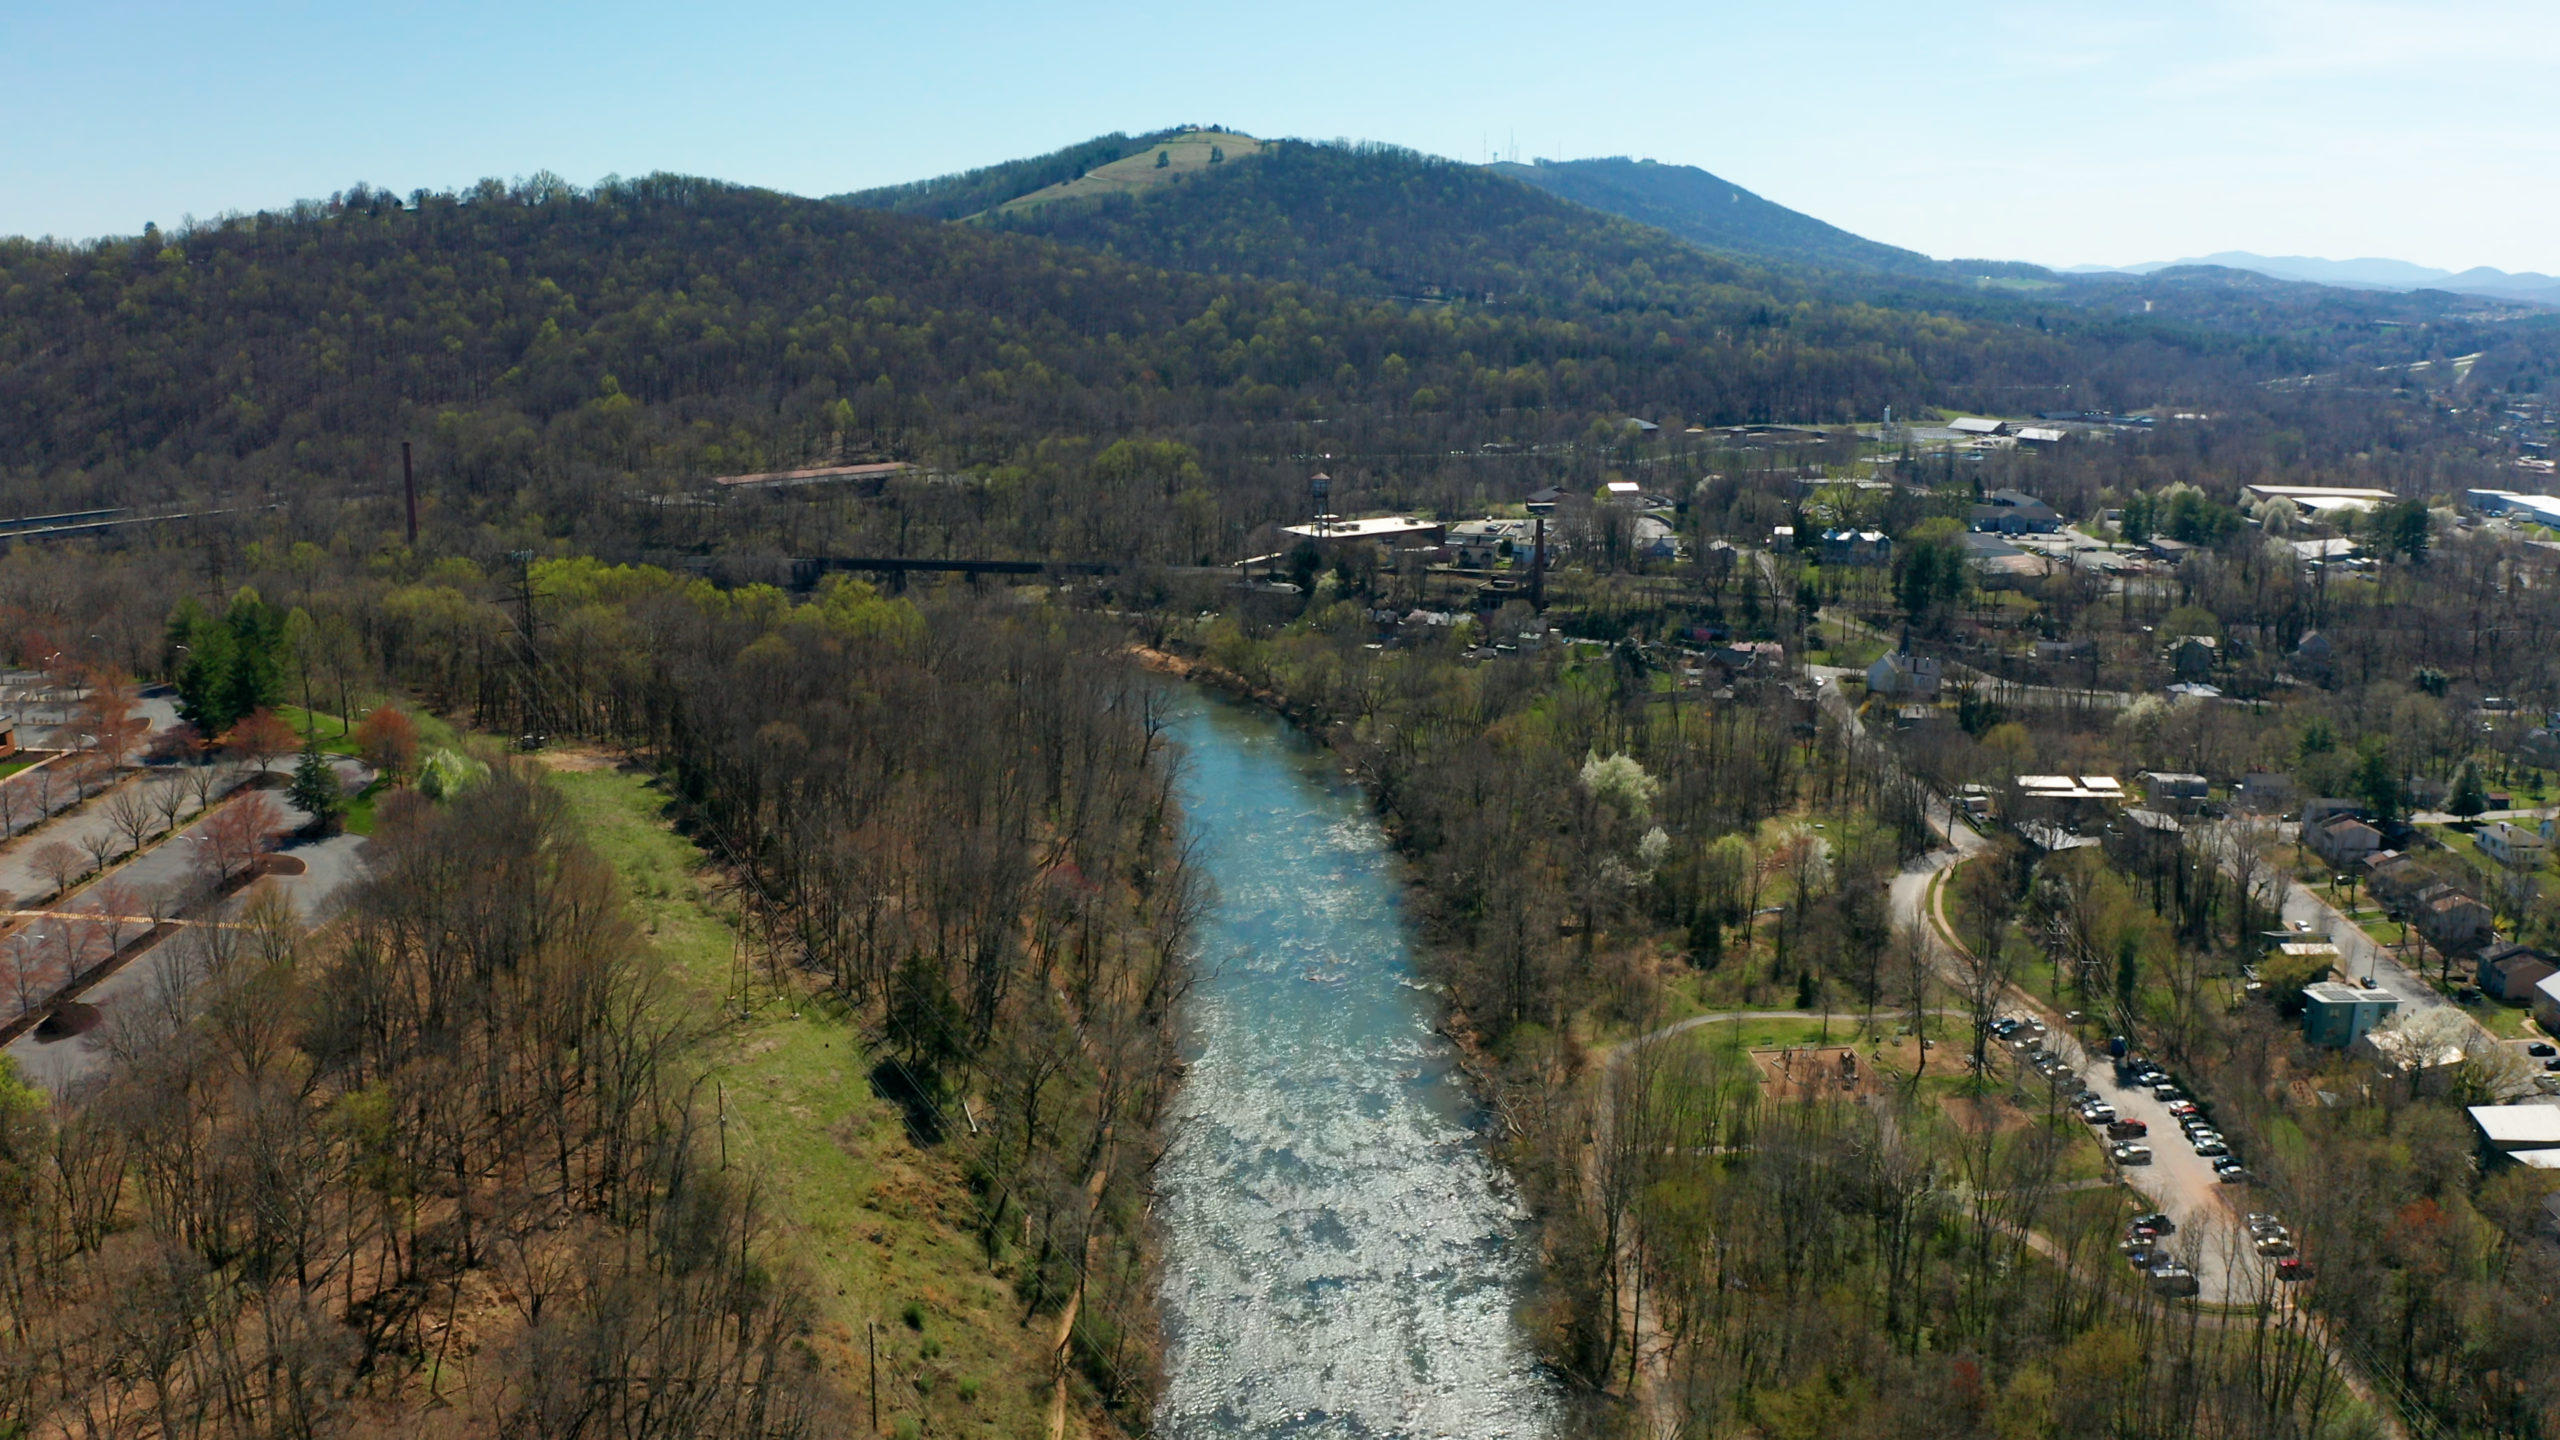 Drone image of the Rivanna River